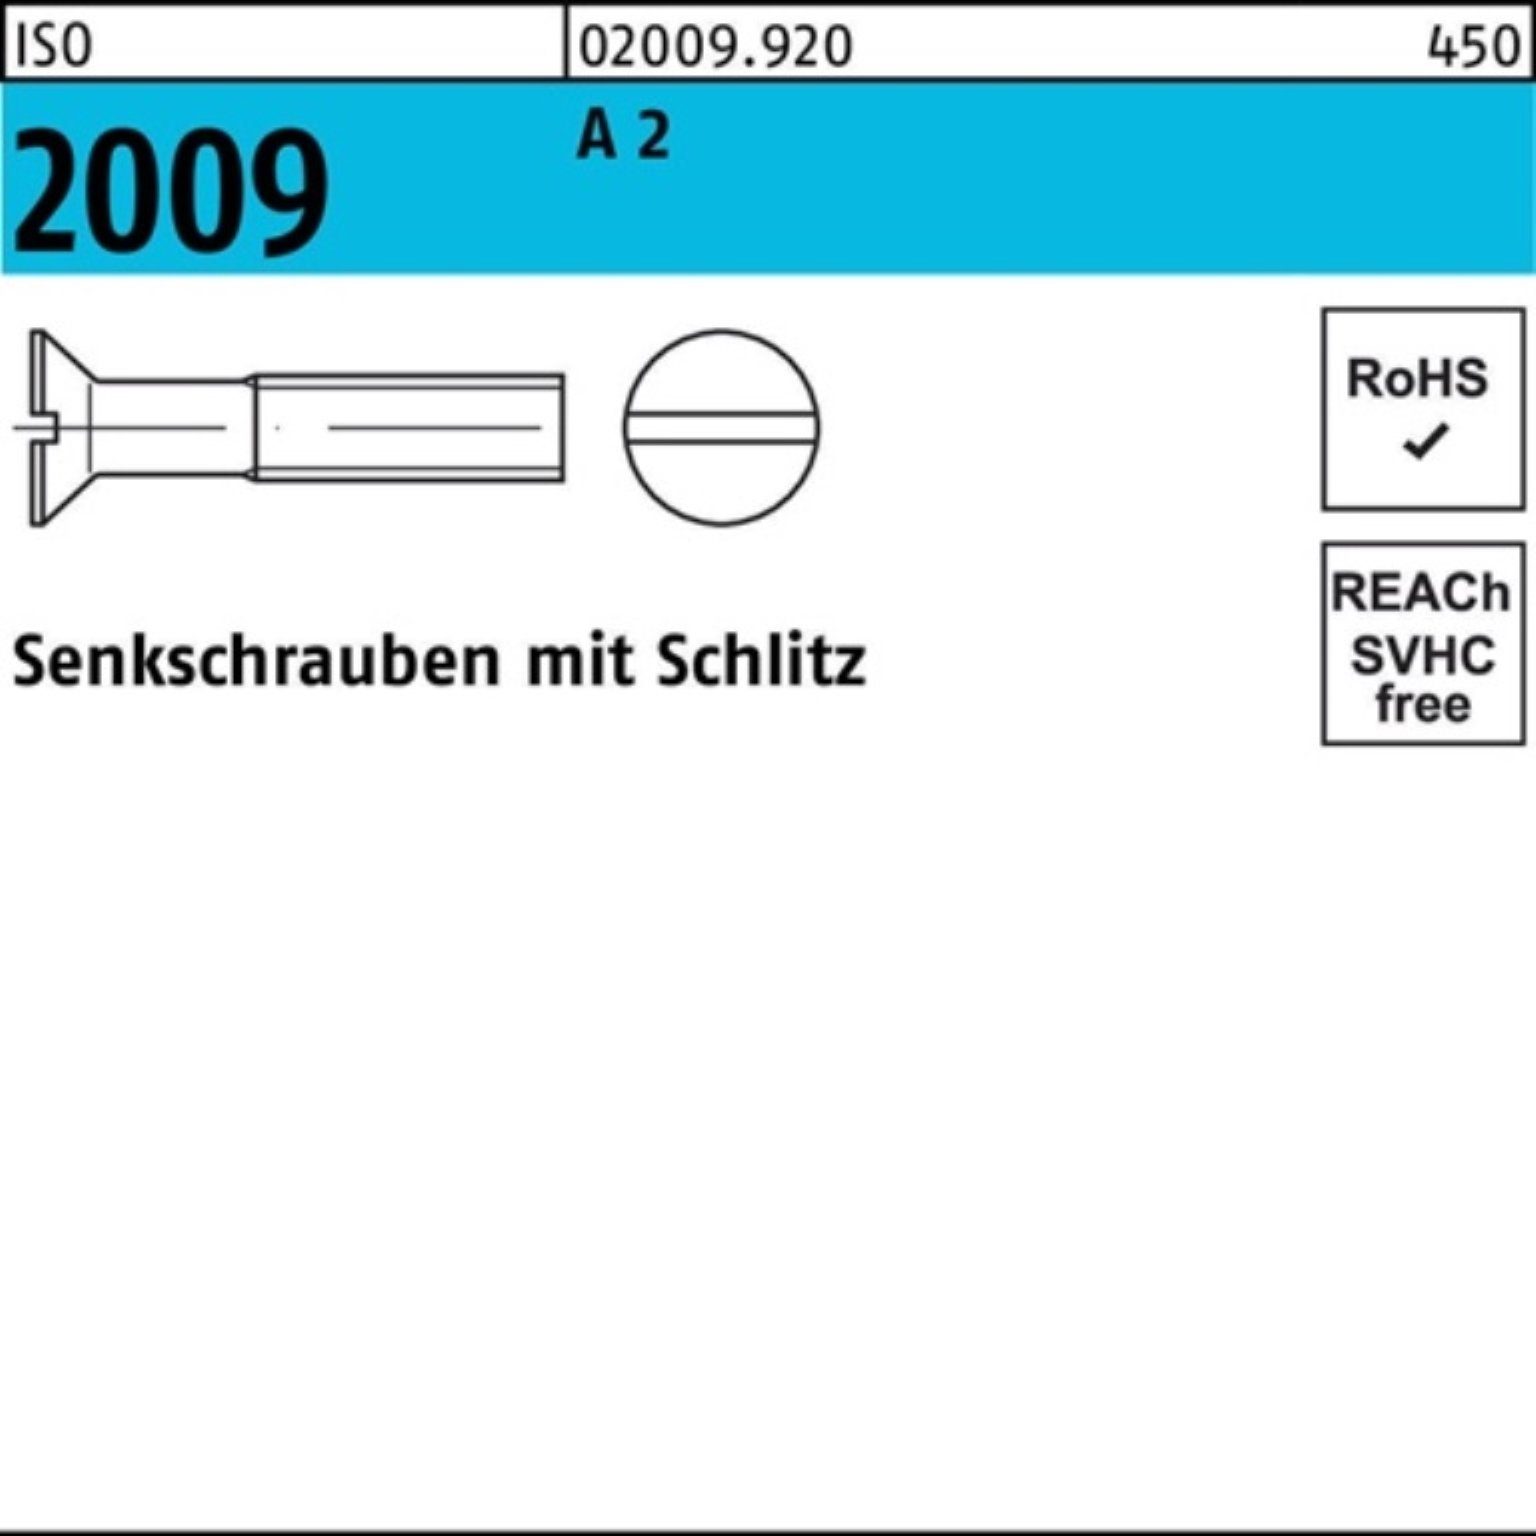 2 Senkschraube M6x 2009 Stück Schlitz ISO ISO 50 Pack 2009 Reyher 100er 90 A Senkschraube